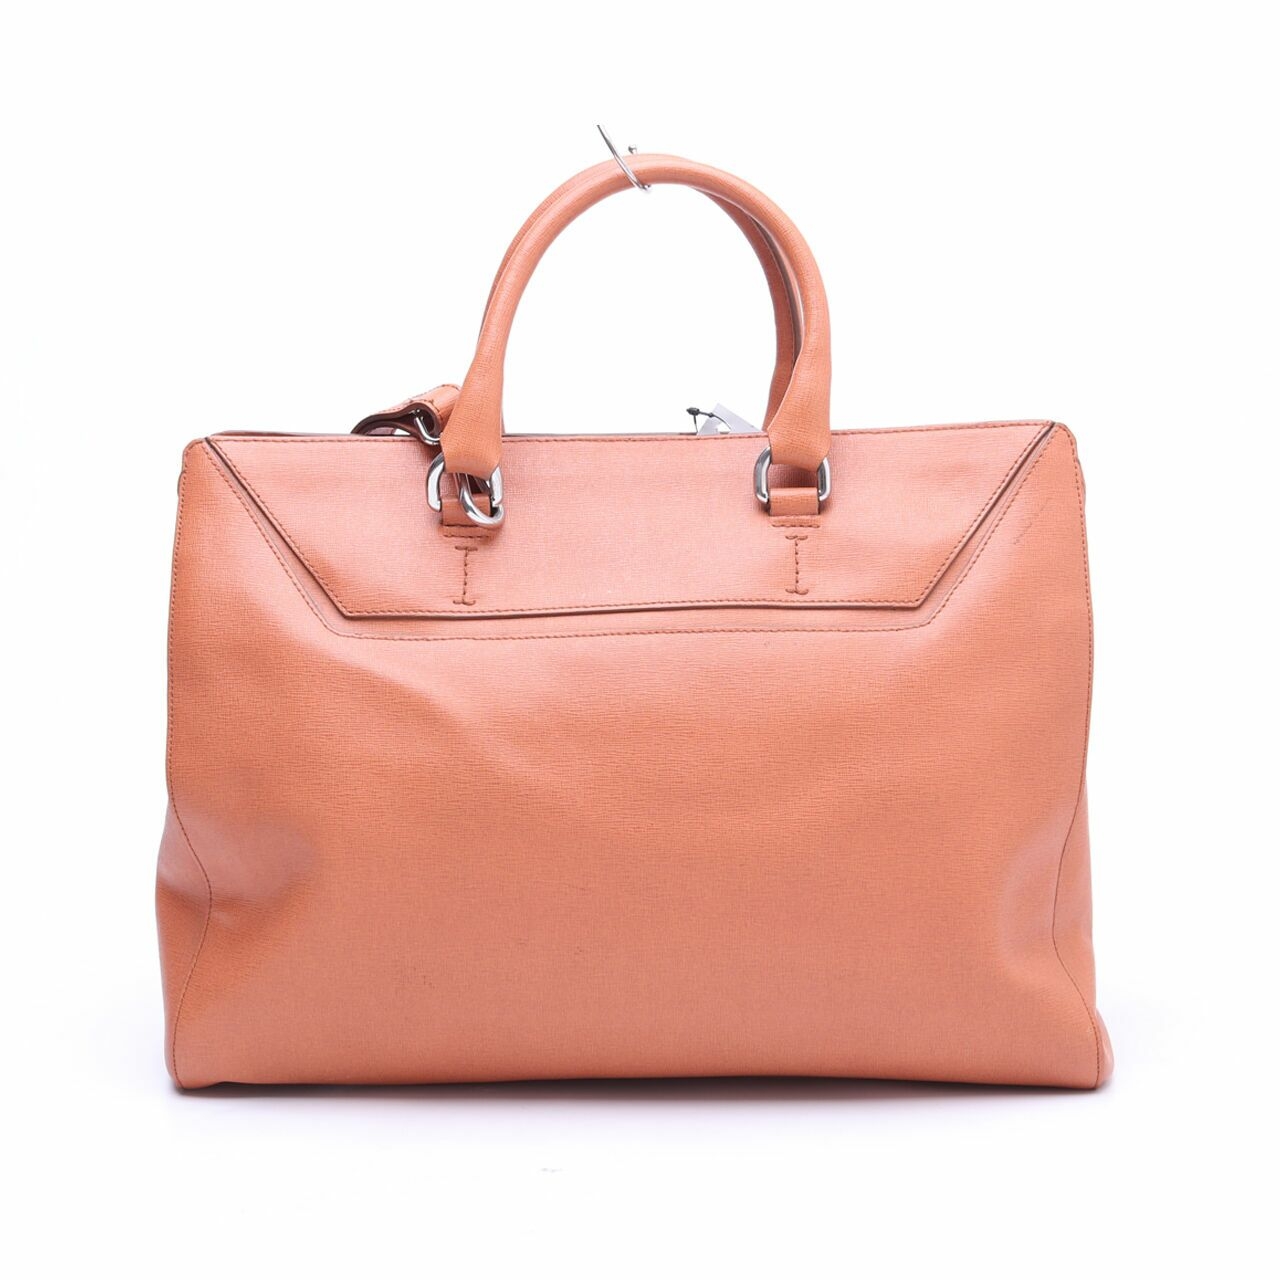 Furla Square Orange Leather Satchel Bag